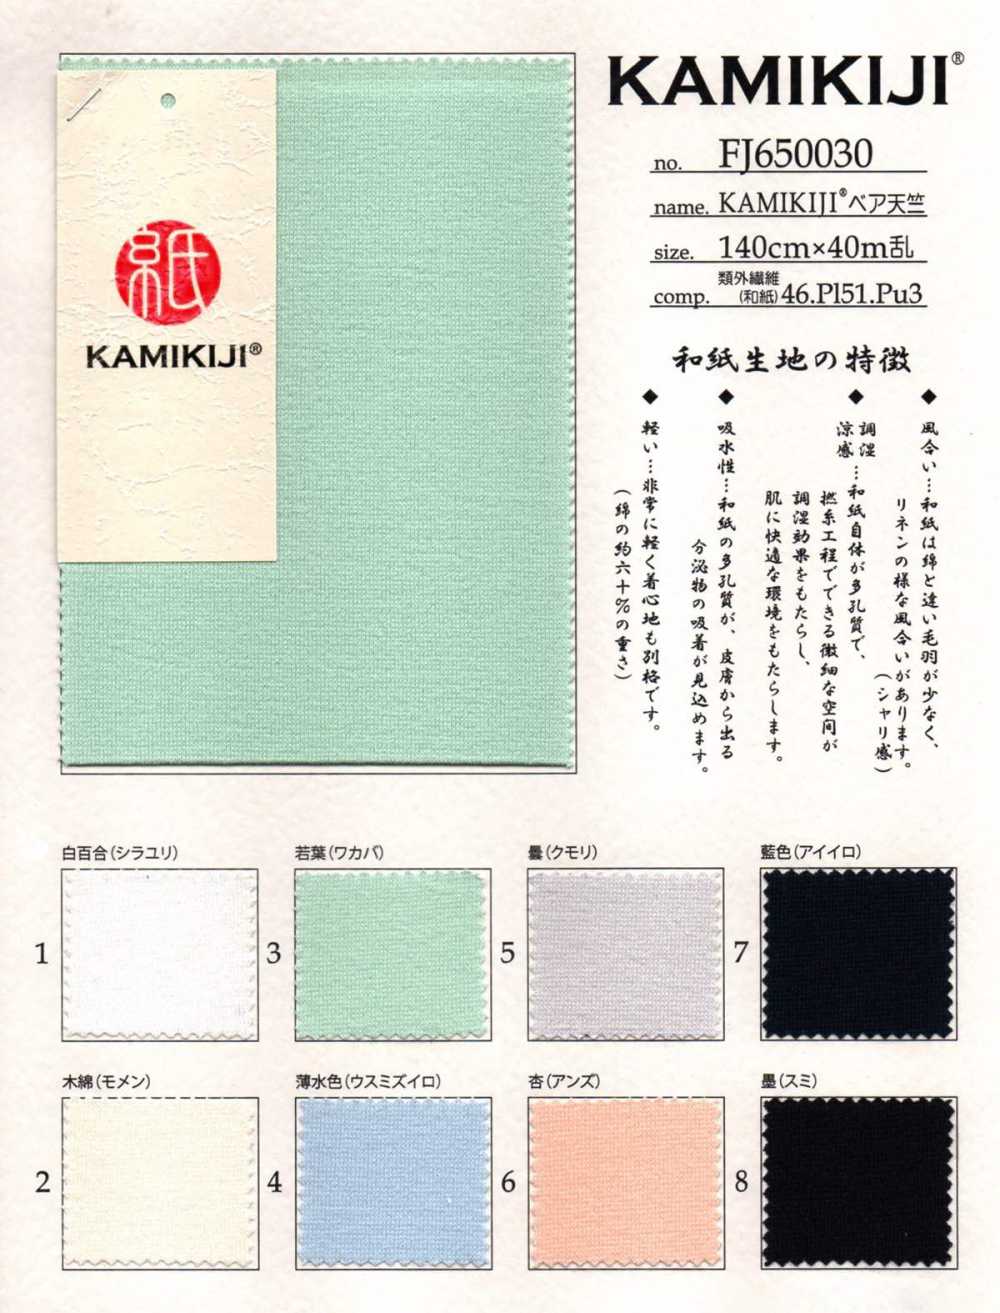 FJ650030 Maglia Nuda KAMIKIJI®[Tessile / Tessuto] Fujisaki Textile